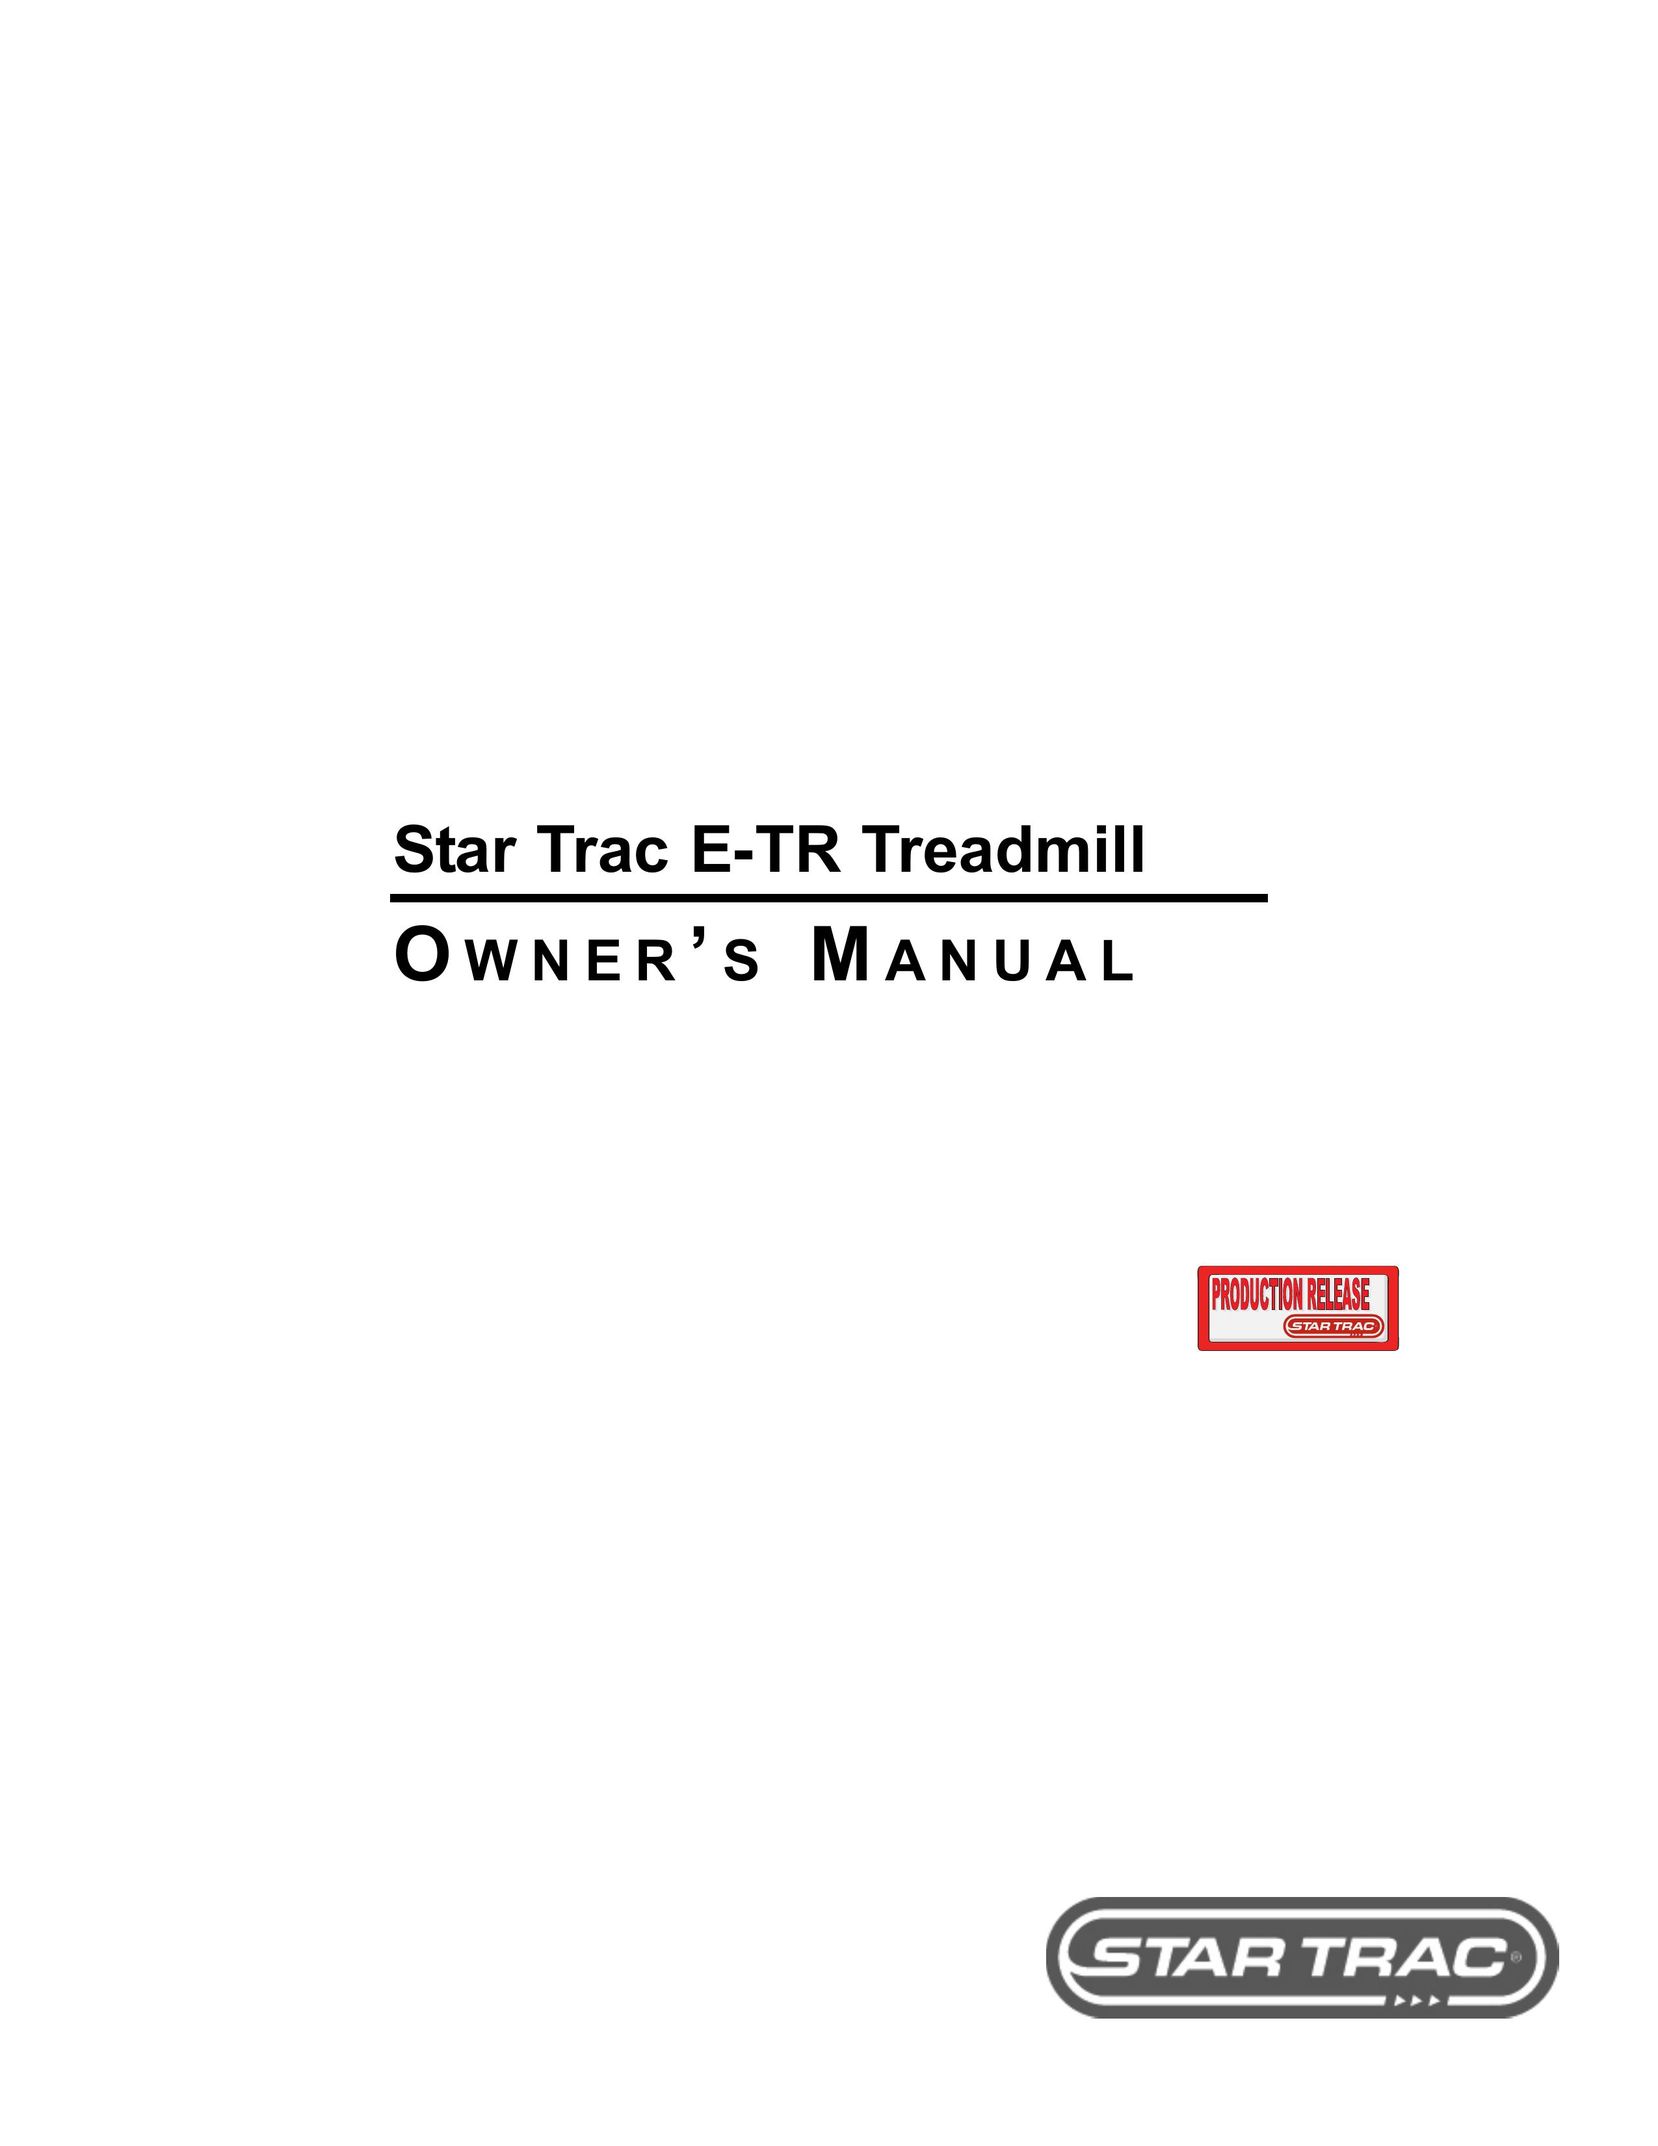 Star Trac E-TR Treadmill User Manual